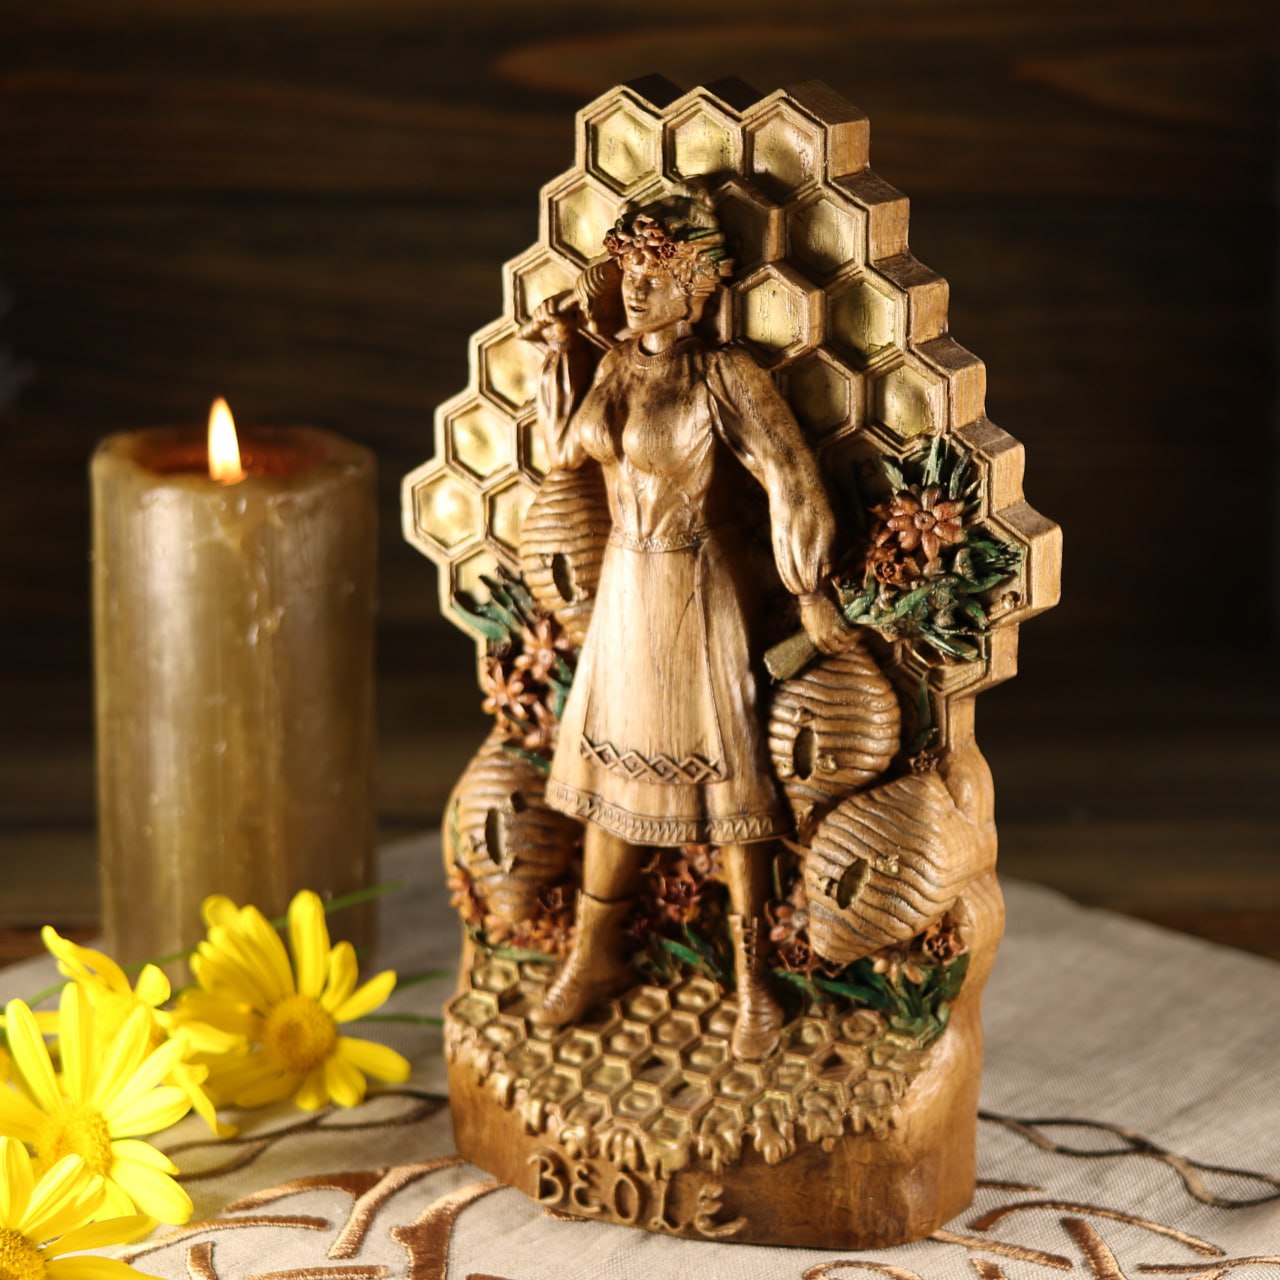 Béole Bee Norse Bees Goddess Statue - Wooden Sculpture